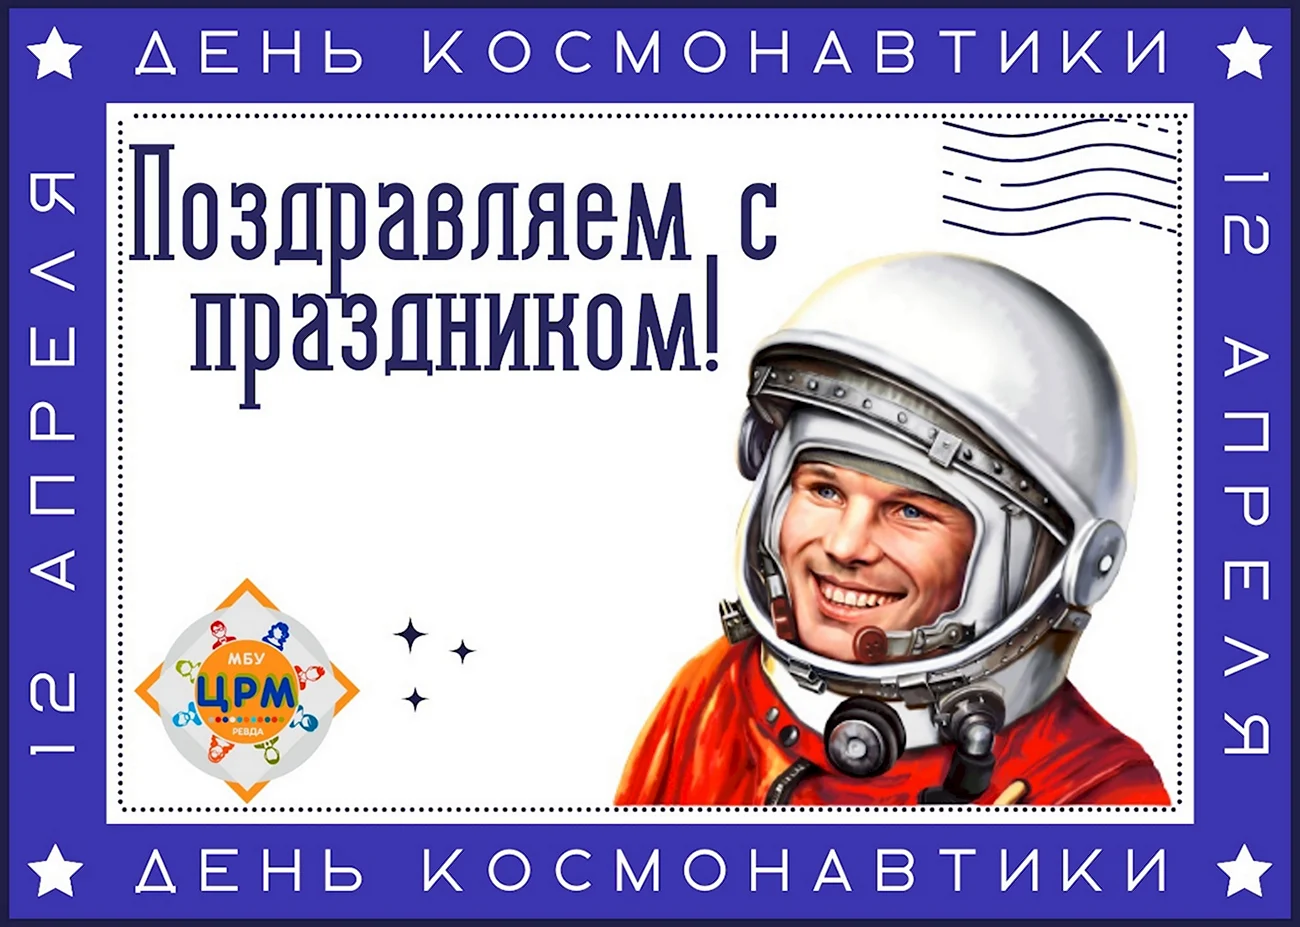 12 Апреля день космонавтики. Поздравление